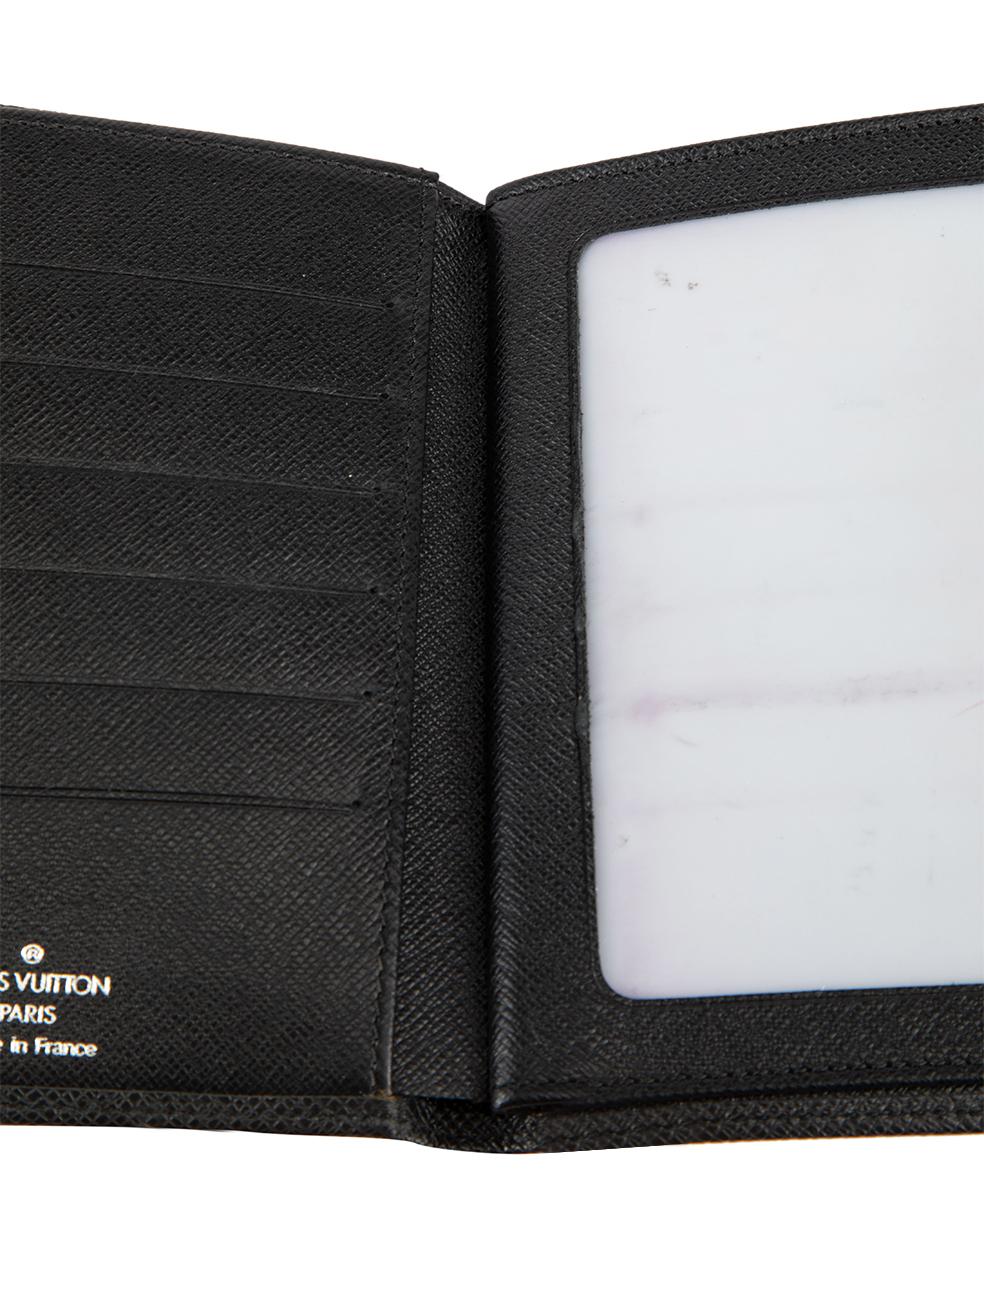 Louis Vuitton Black Leather Logo Passport Wallet For Sale 1